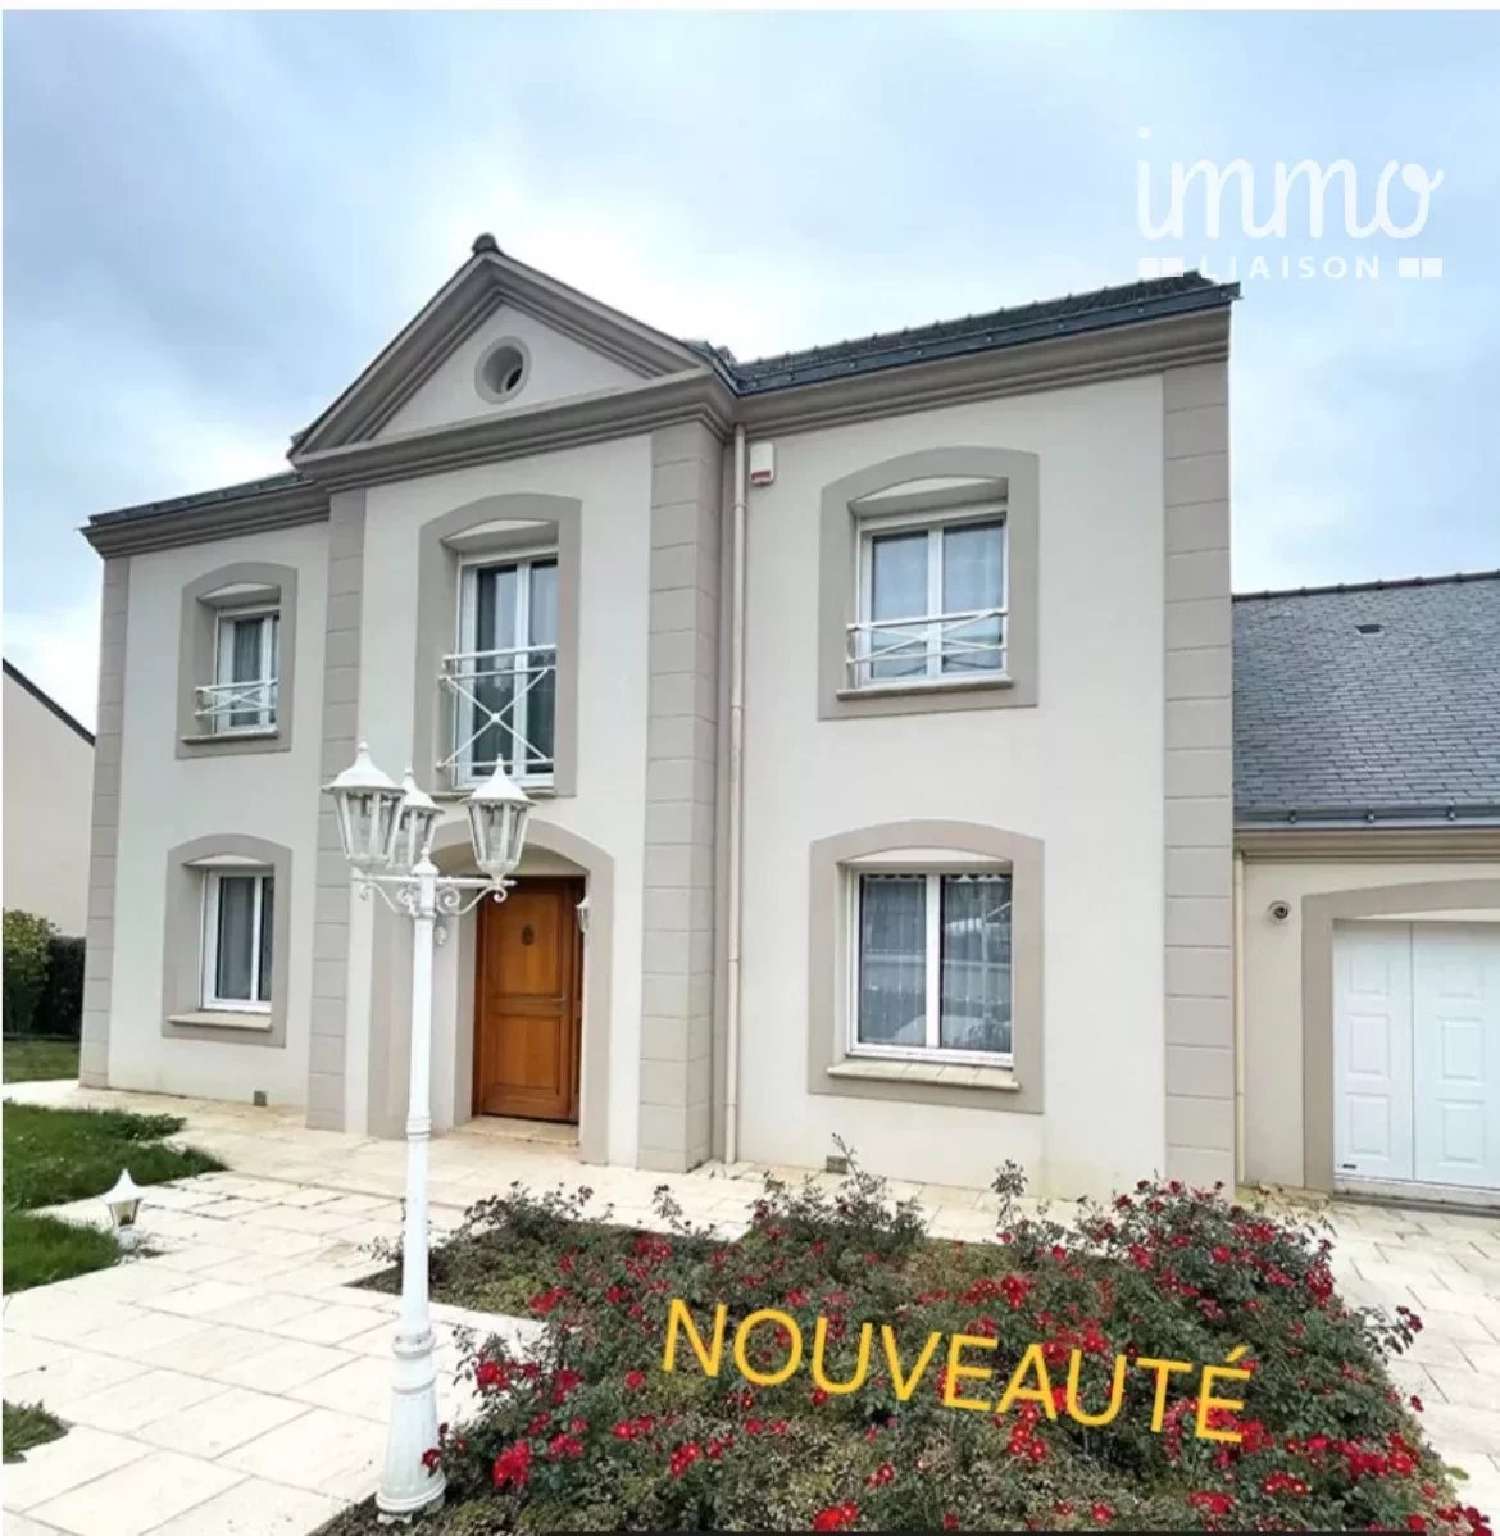  à vendre maison Carquefou Loire-Atlantique 1